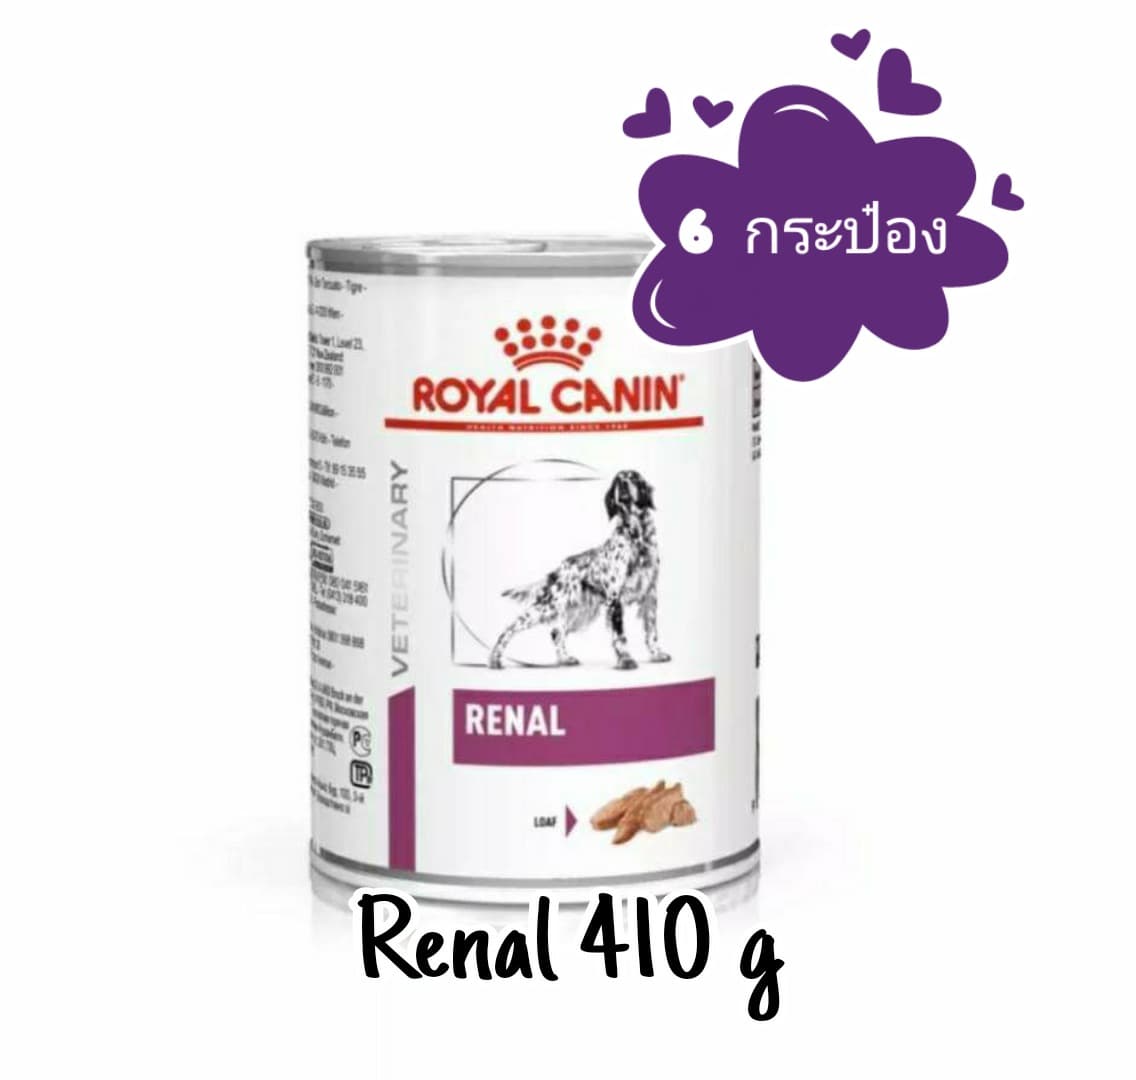 Royal Canin Renal  อาหารสุนัข โรคไต แบบกระป๋อง ขนาด 410g ( 6 กระป๋อง).